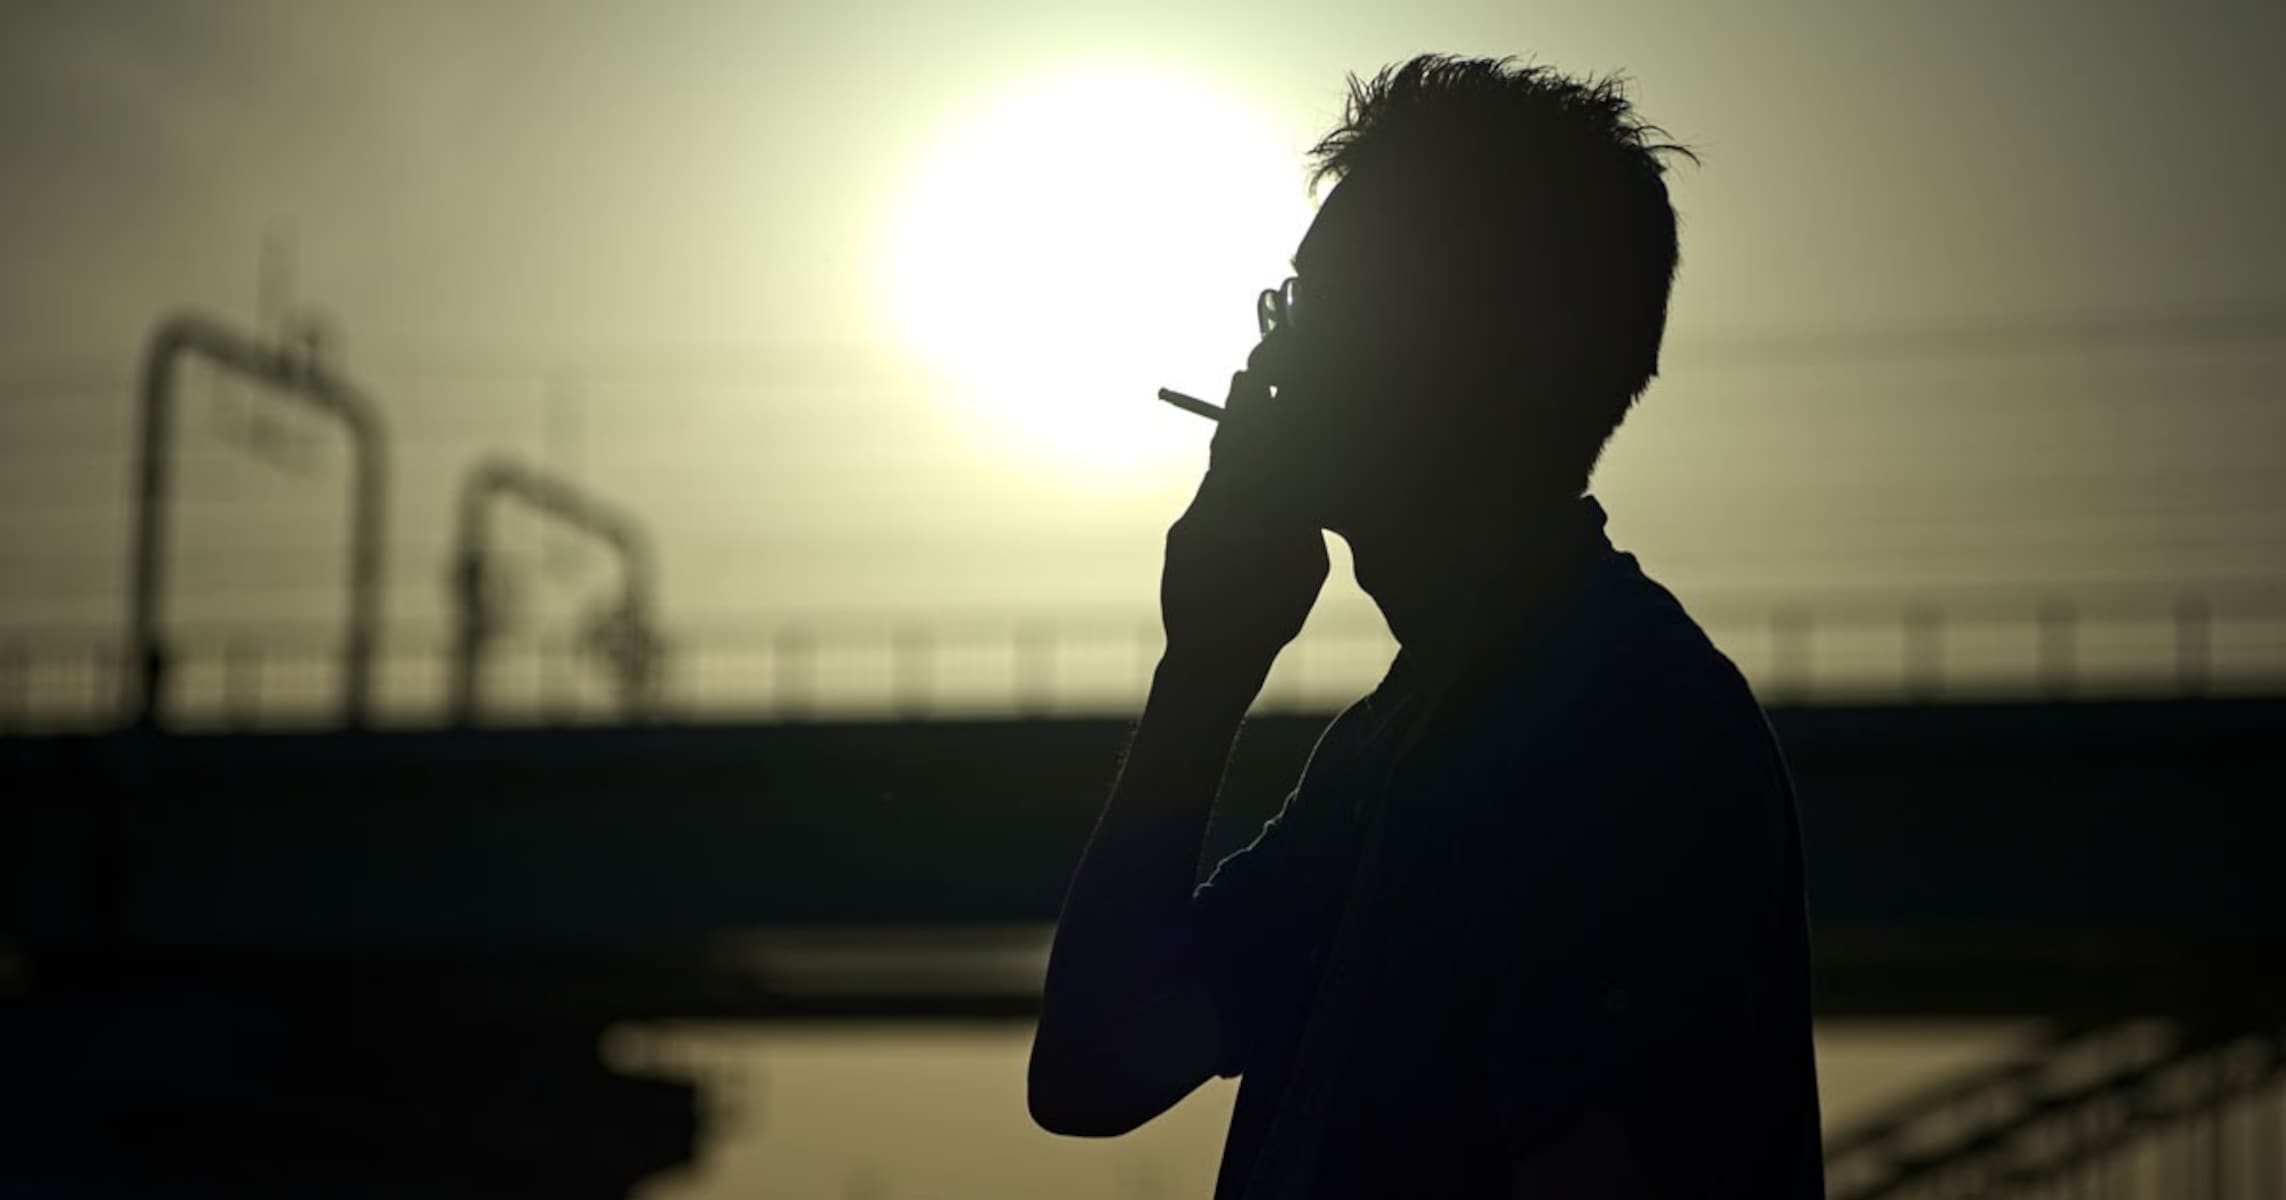  「タバコ描写」規制は昭和の“リアリティ”を奪う… 愛煙家が考える解決法とは